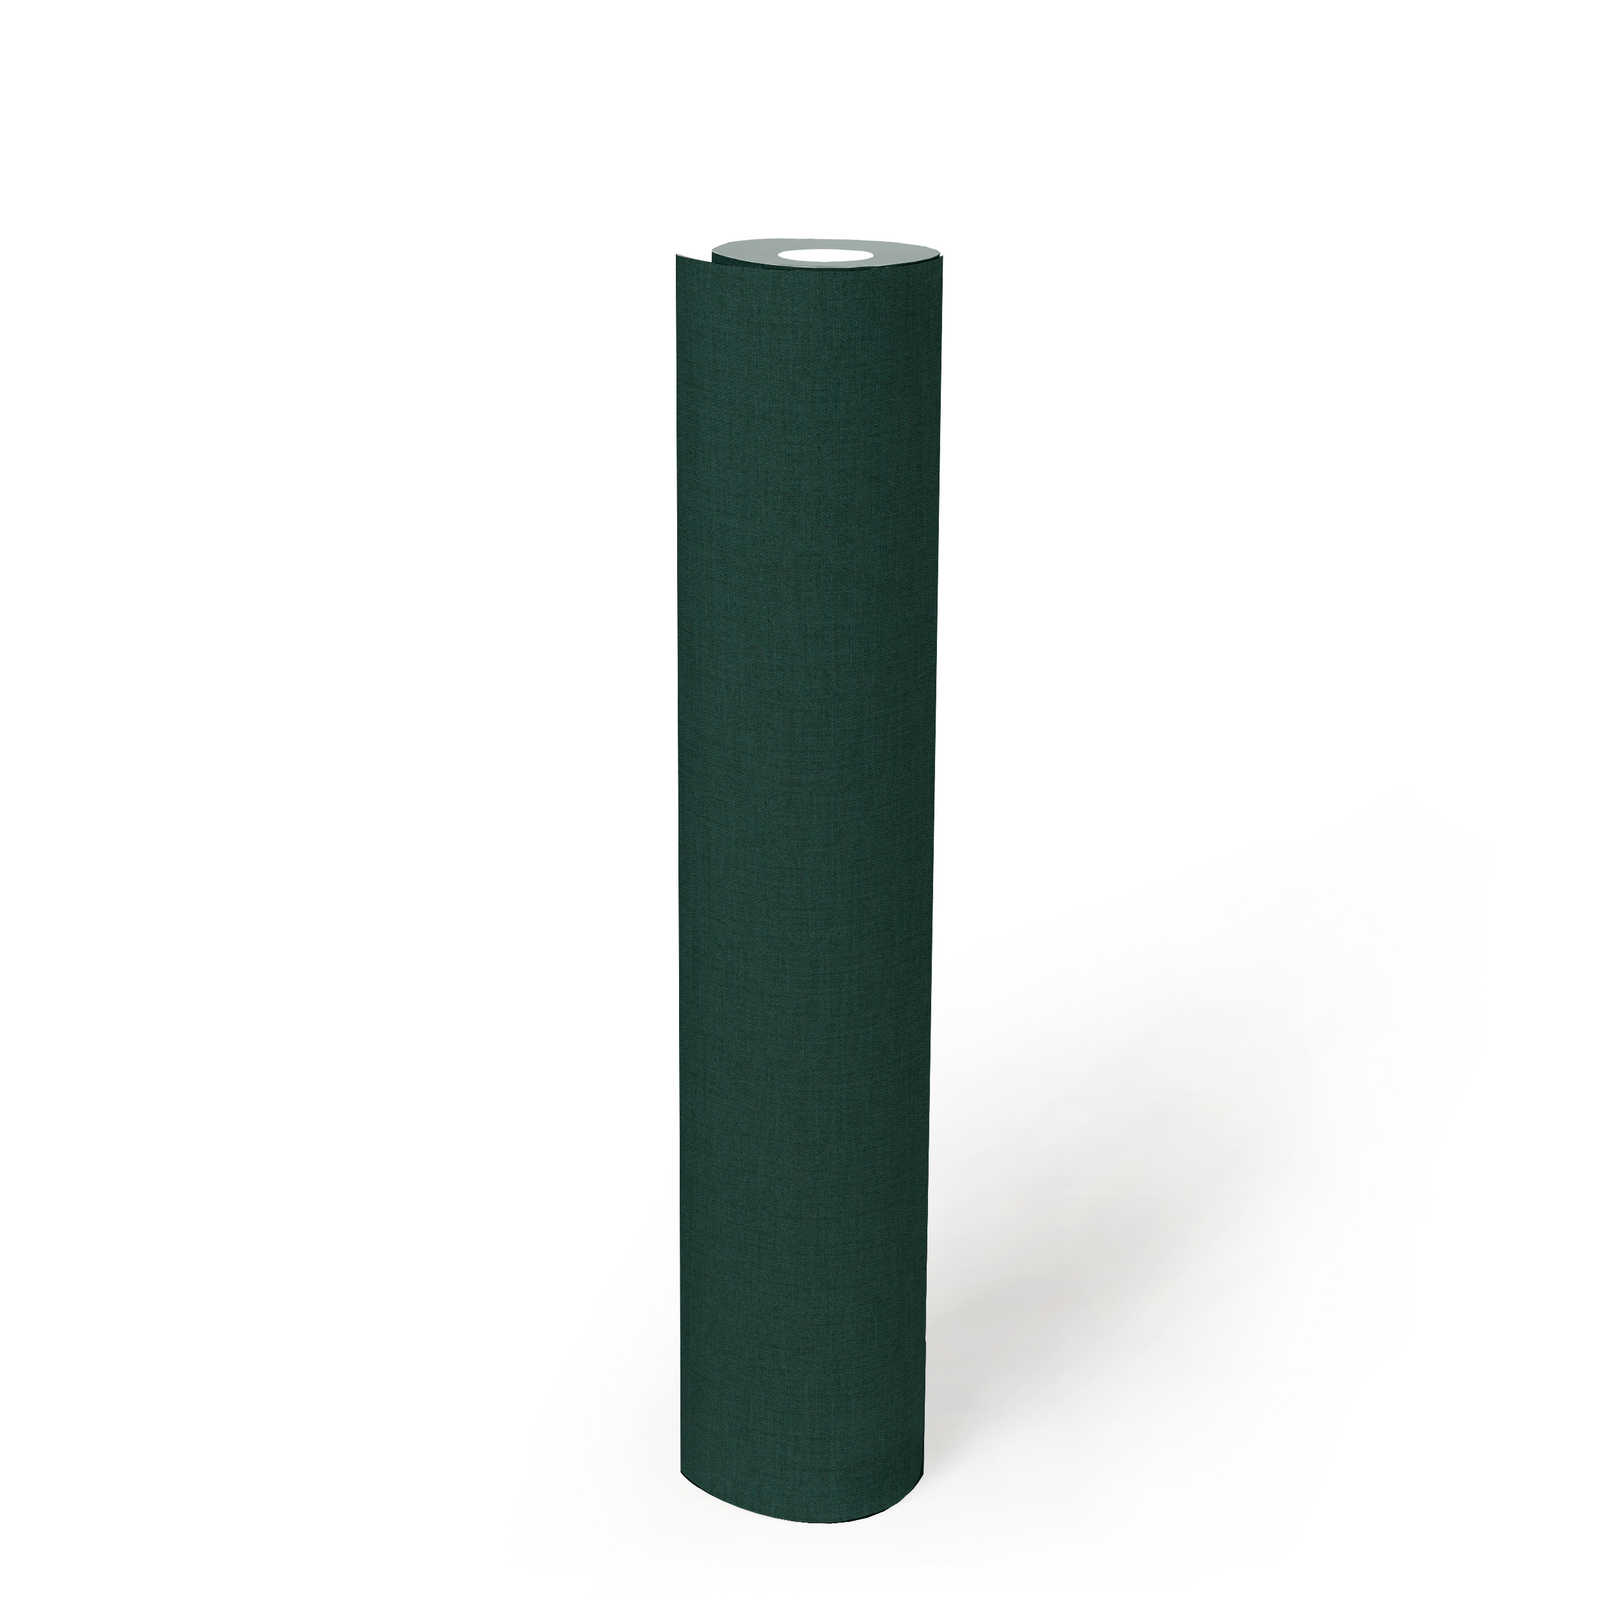             Fir green non-woven wallpaper with textile texture - green
        